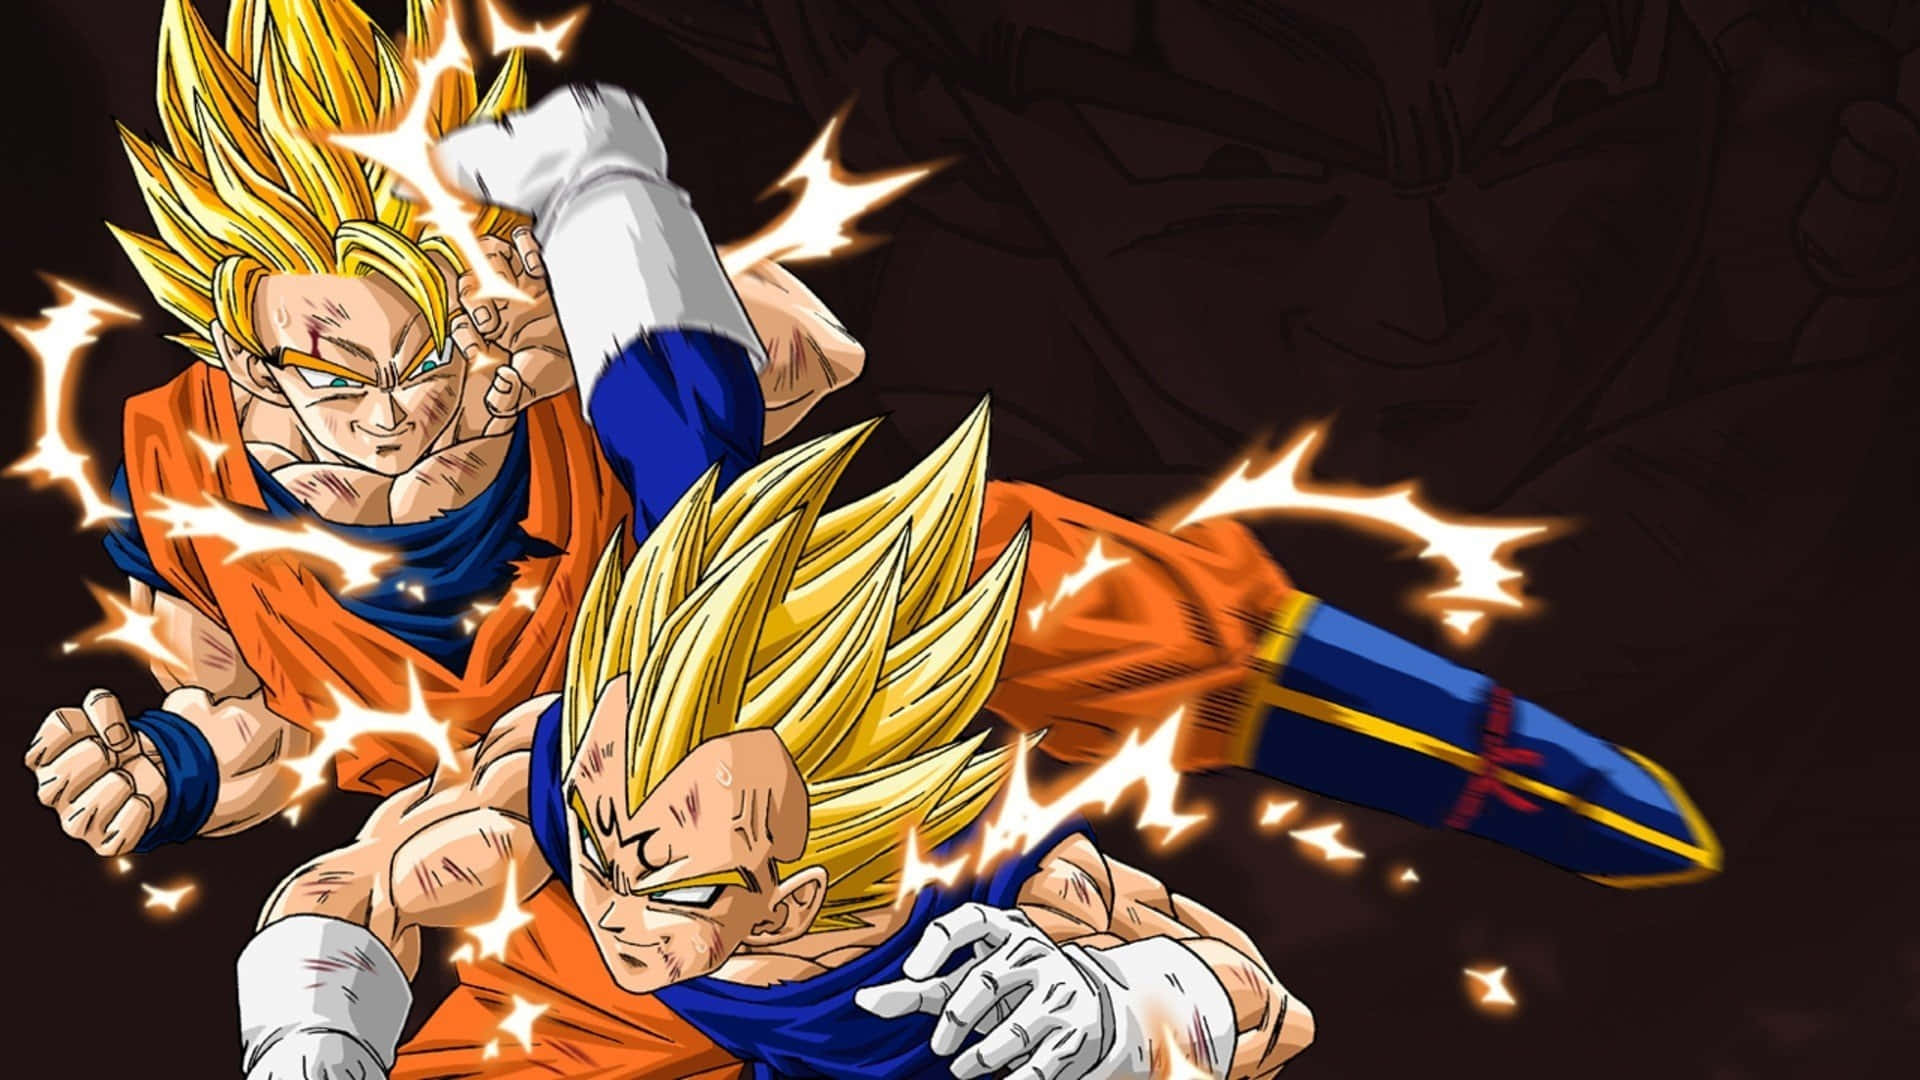 "The Eternal Rivals - Goku and Vegeta" Wallpaper